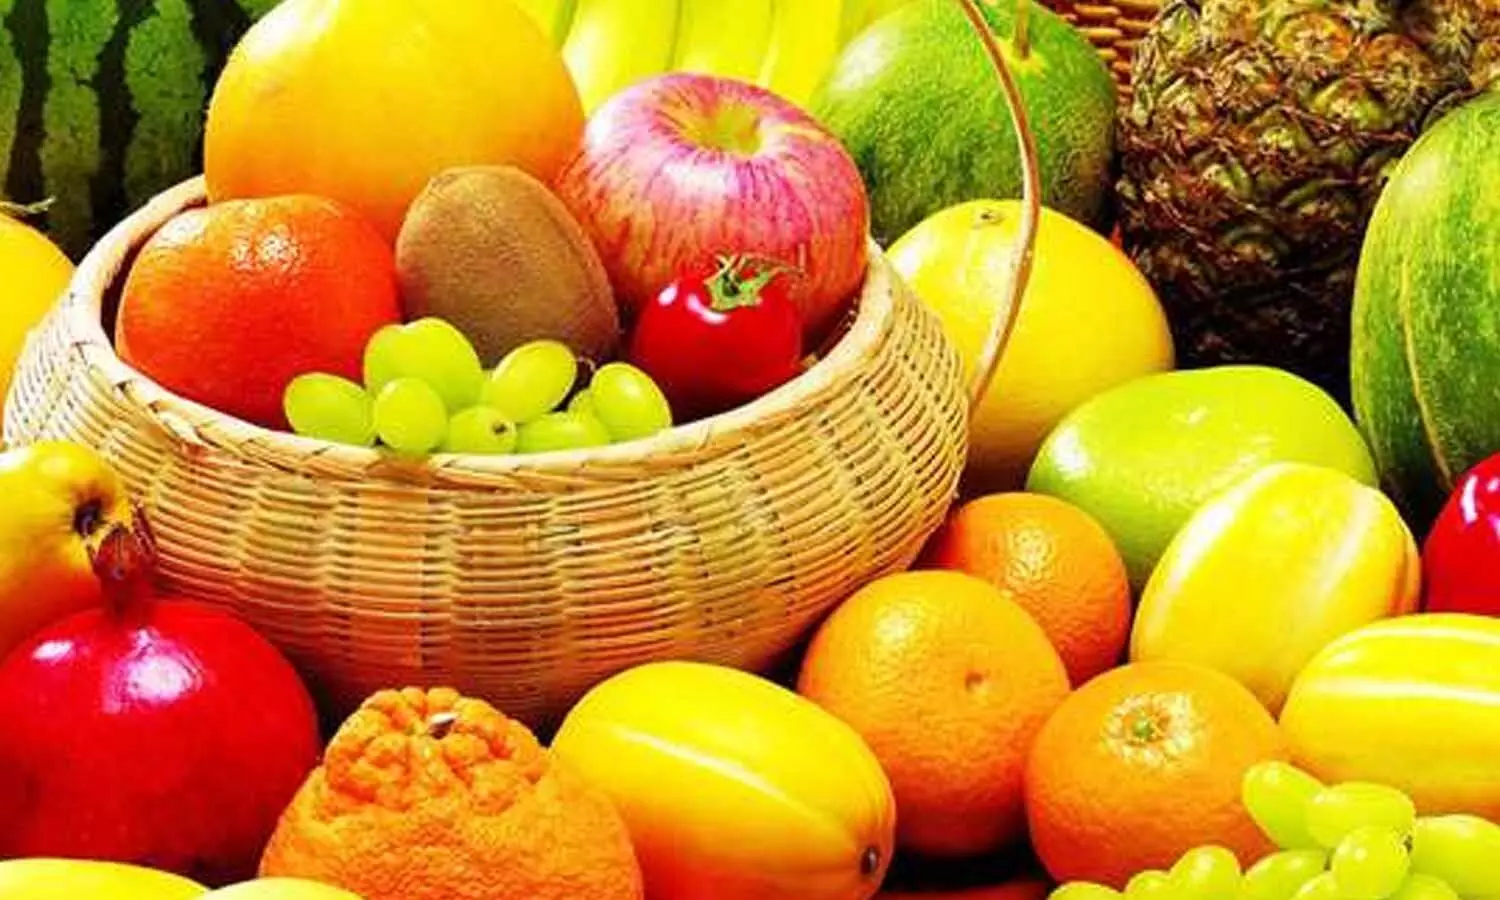 खाने के तुरंत बाद न खाएं ये फल, सेहत पर पड़ता है बुरा असर